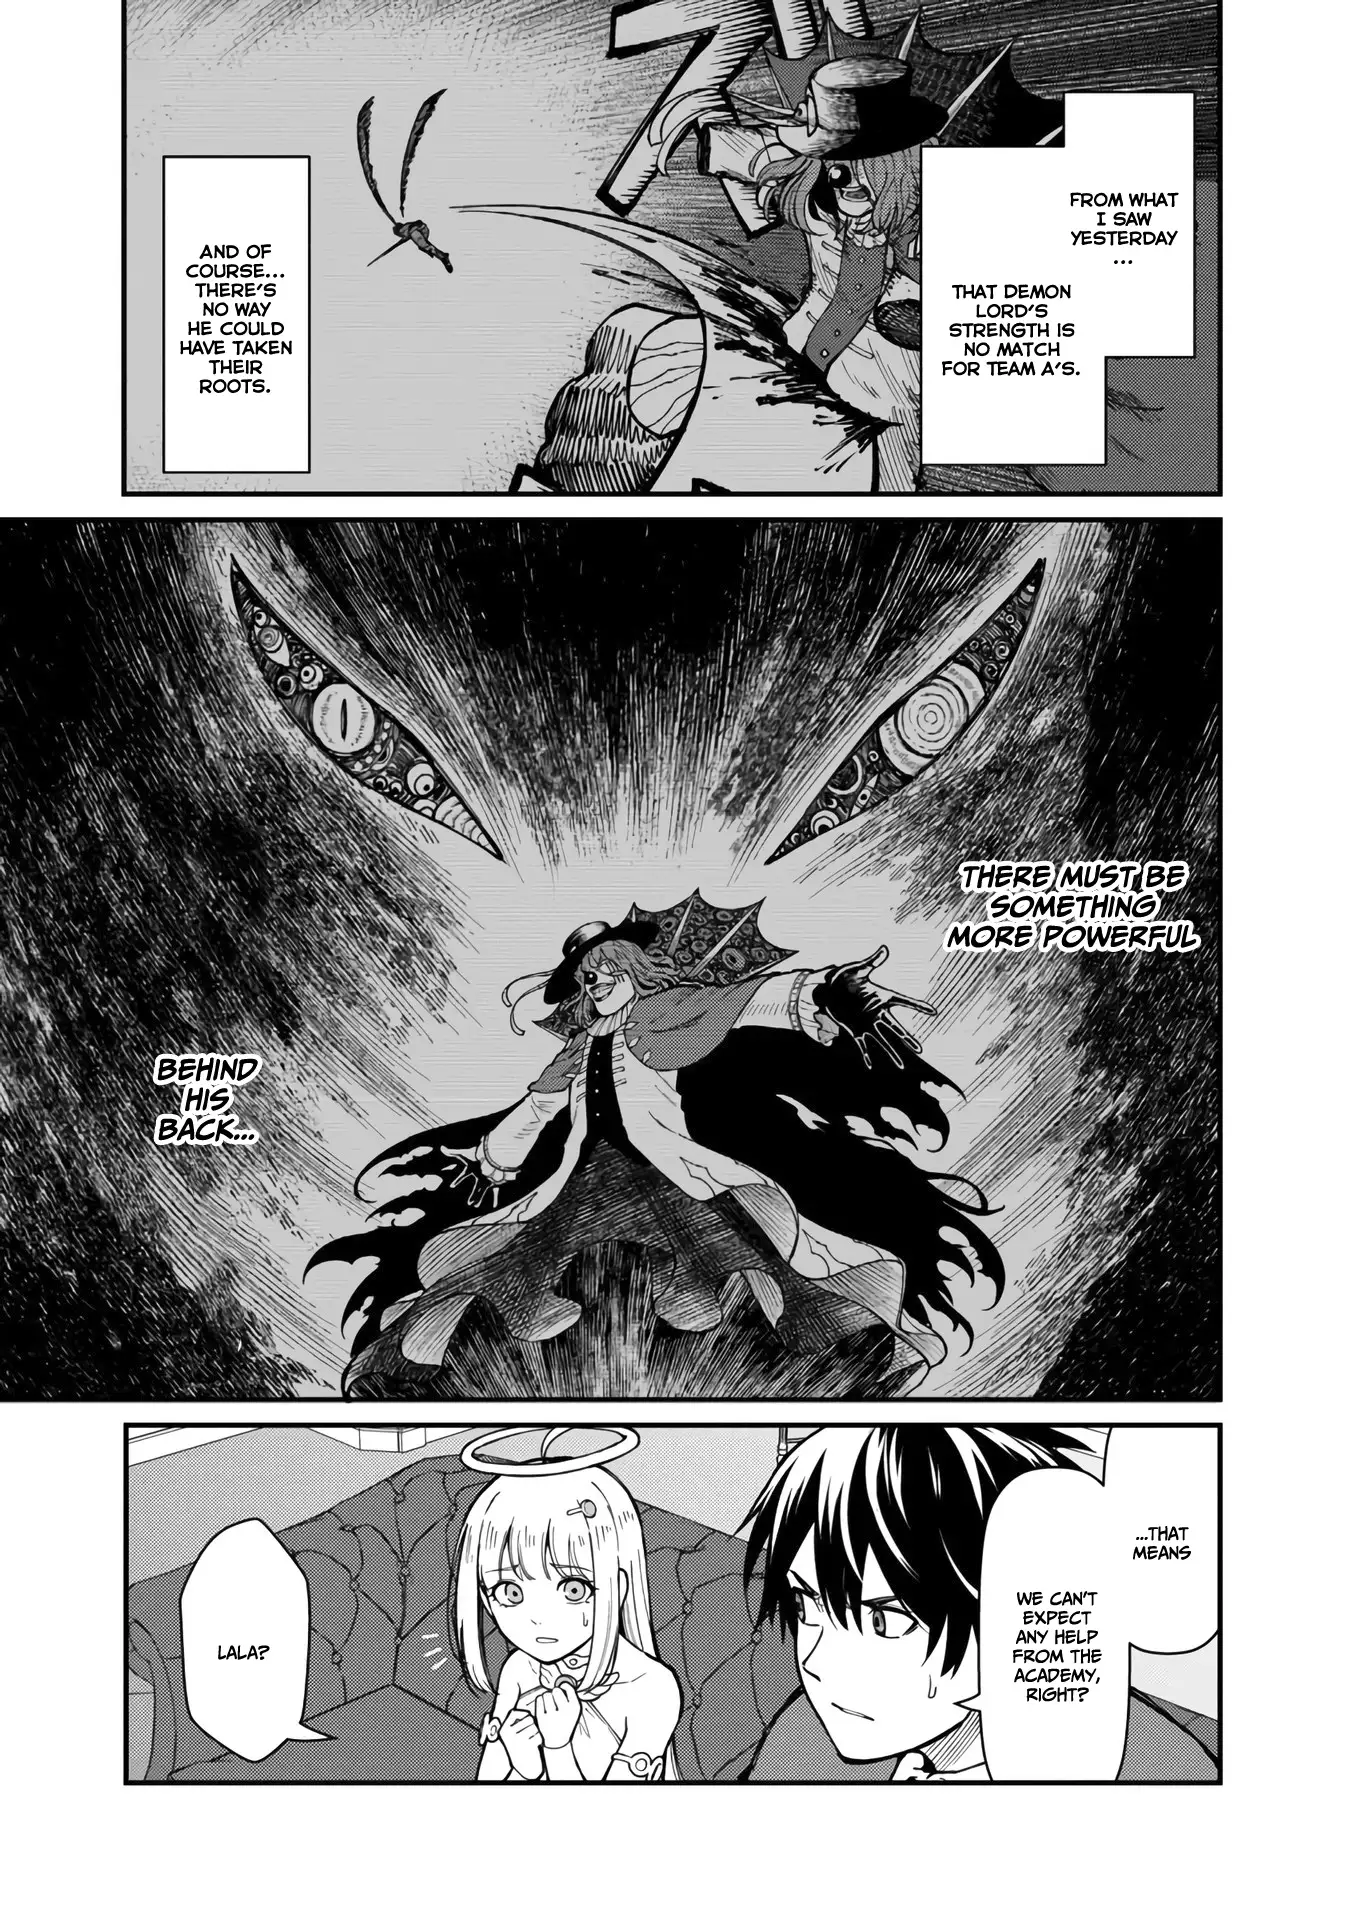 Read Saikyou No Maou Ni Kitaerareta Yuusha Isekai Kikanshatati No Gakuen De  Musou Suru Manga English [New Chapters] Online Free - MangaClash